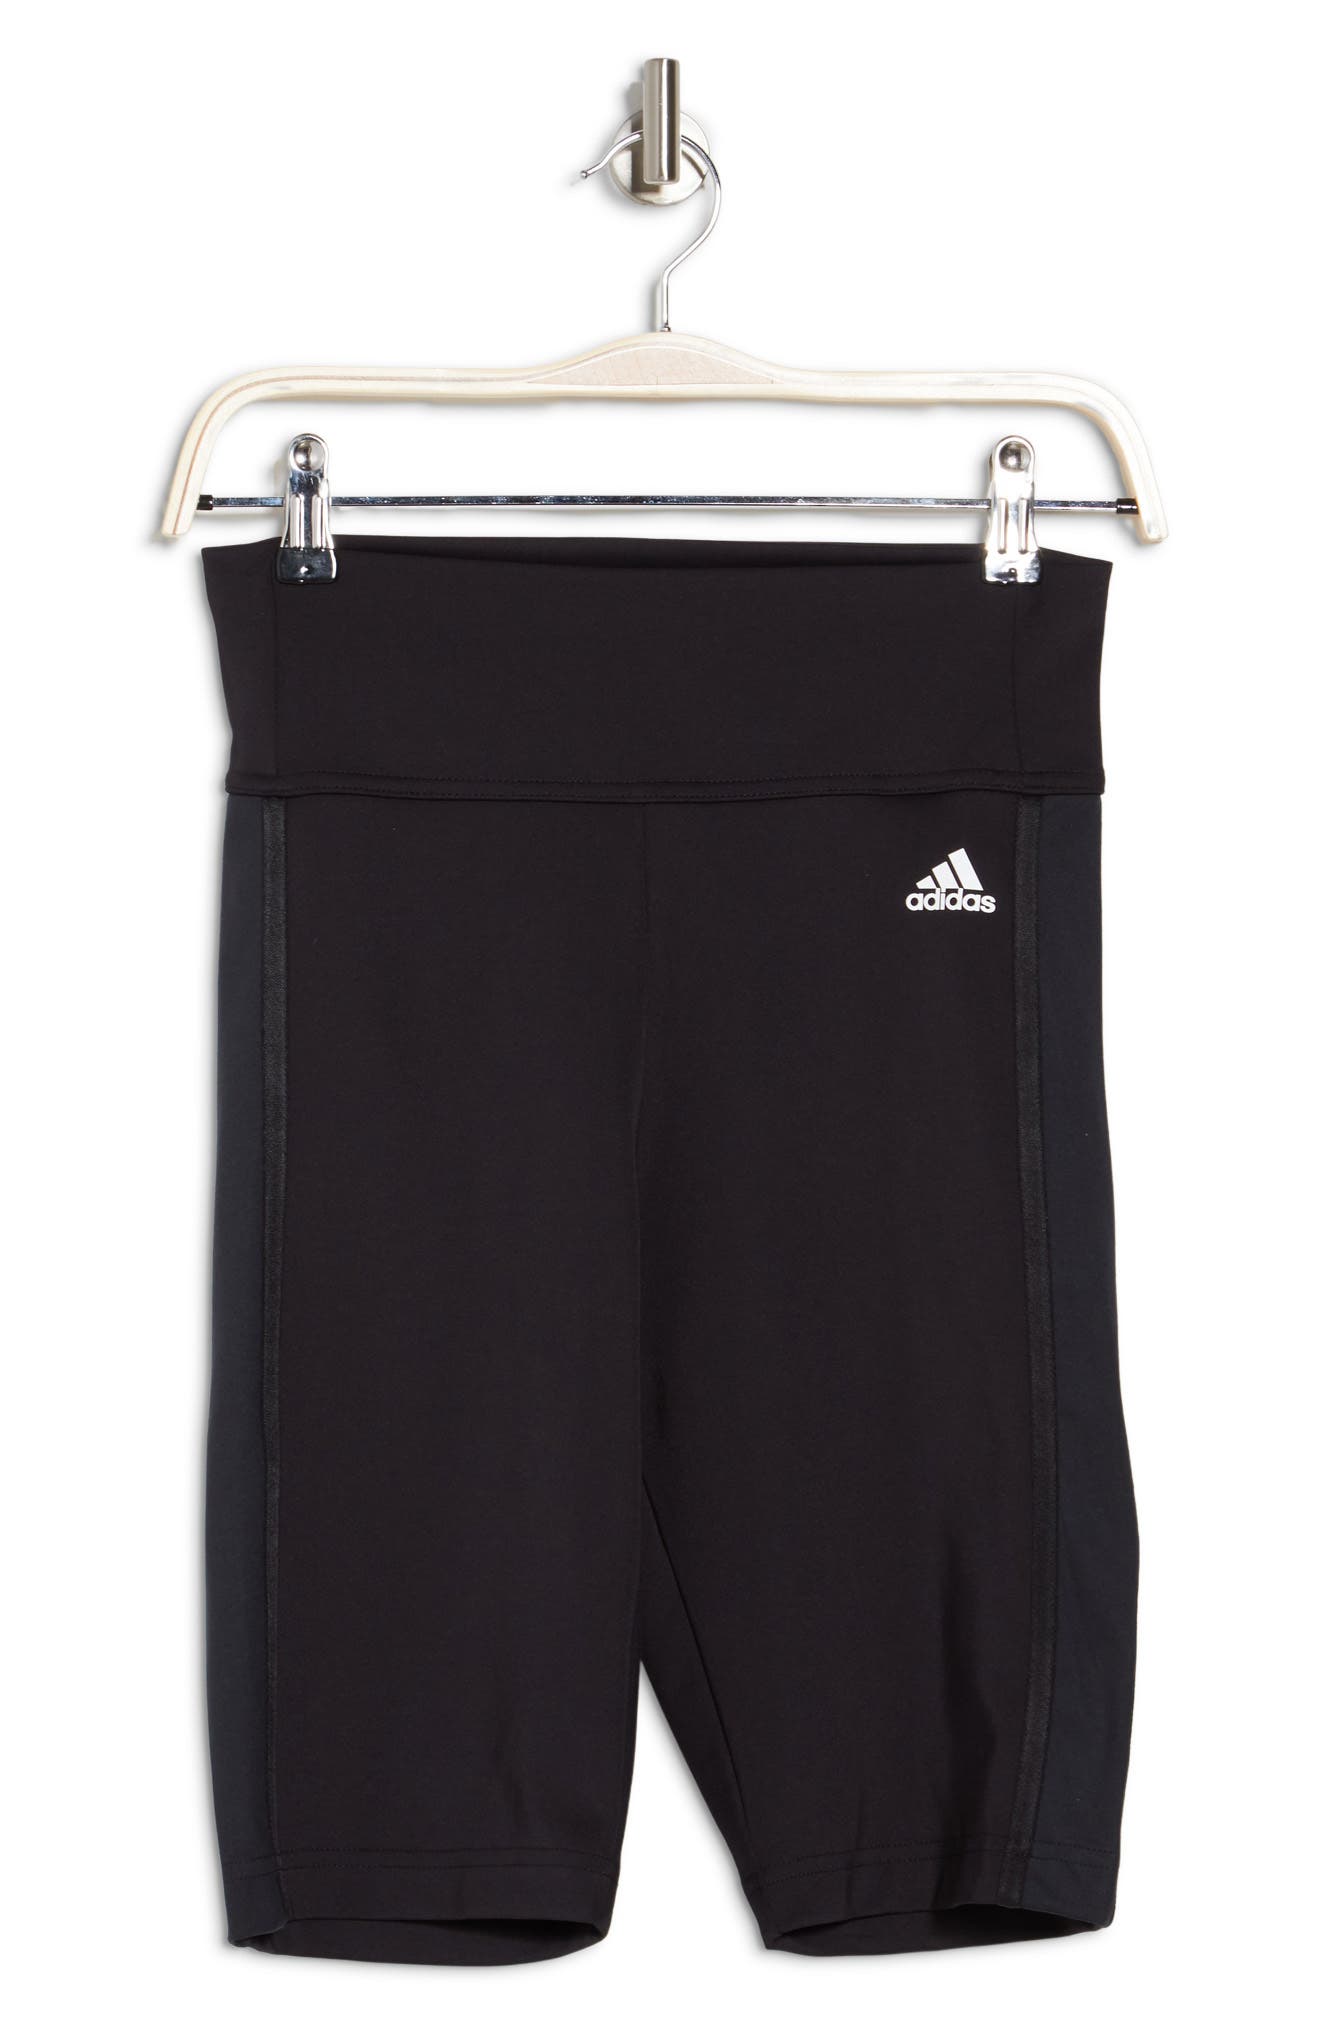 Adidas Originals High Waist Bike Shorts In Black/white